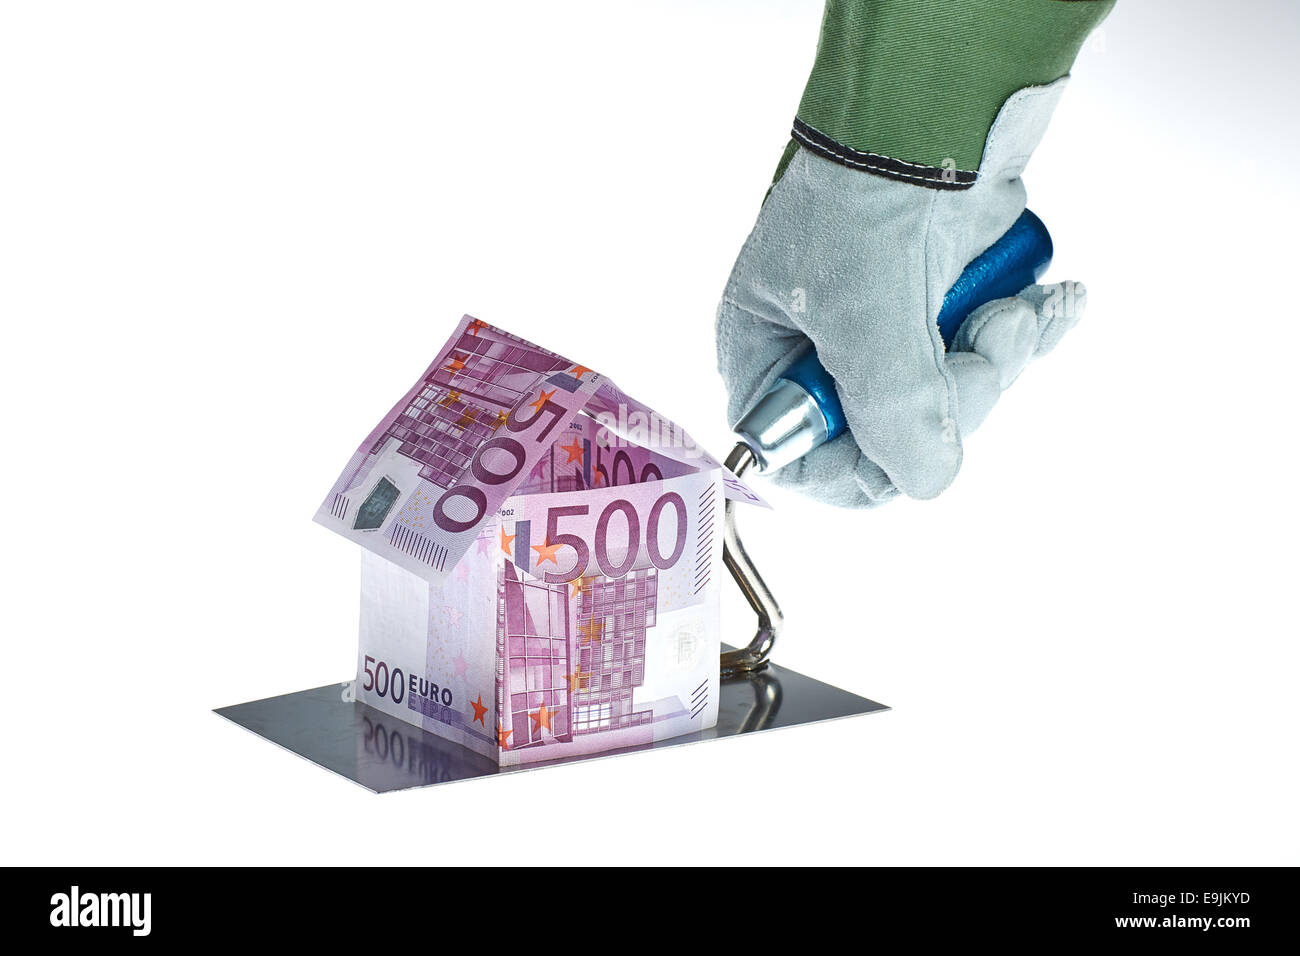 Haus aus 500 Euro Geldscheinen auf einer Arbeiter Kelle Foto de stock